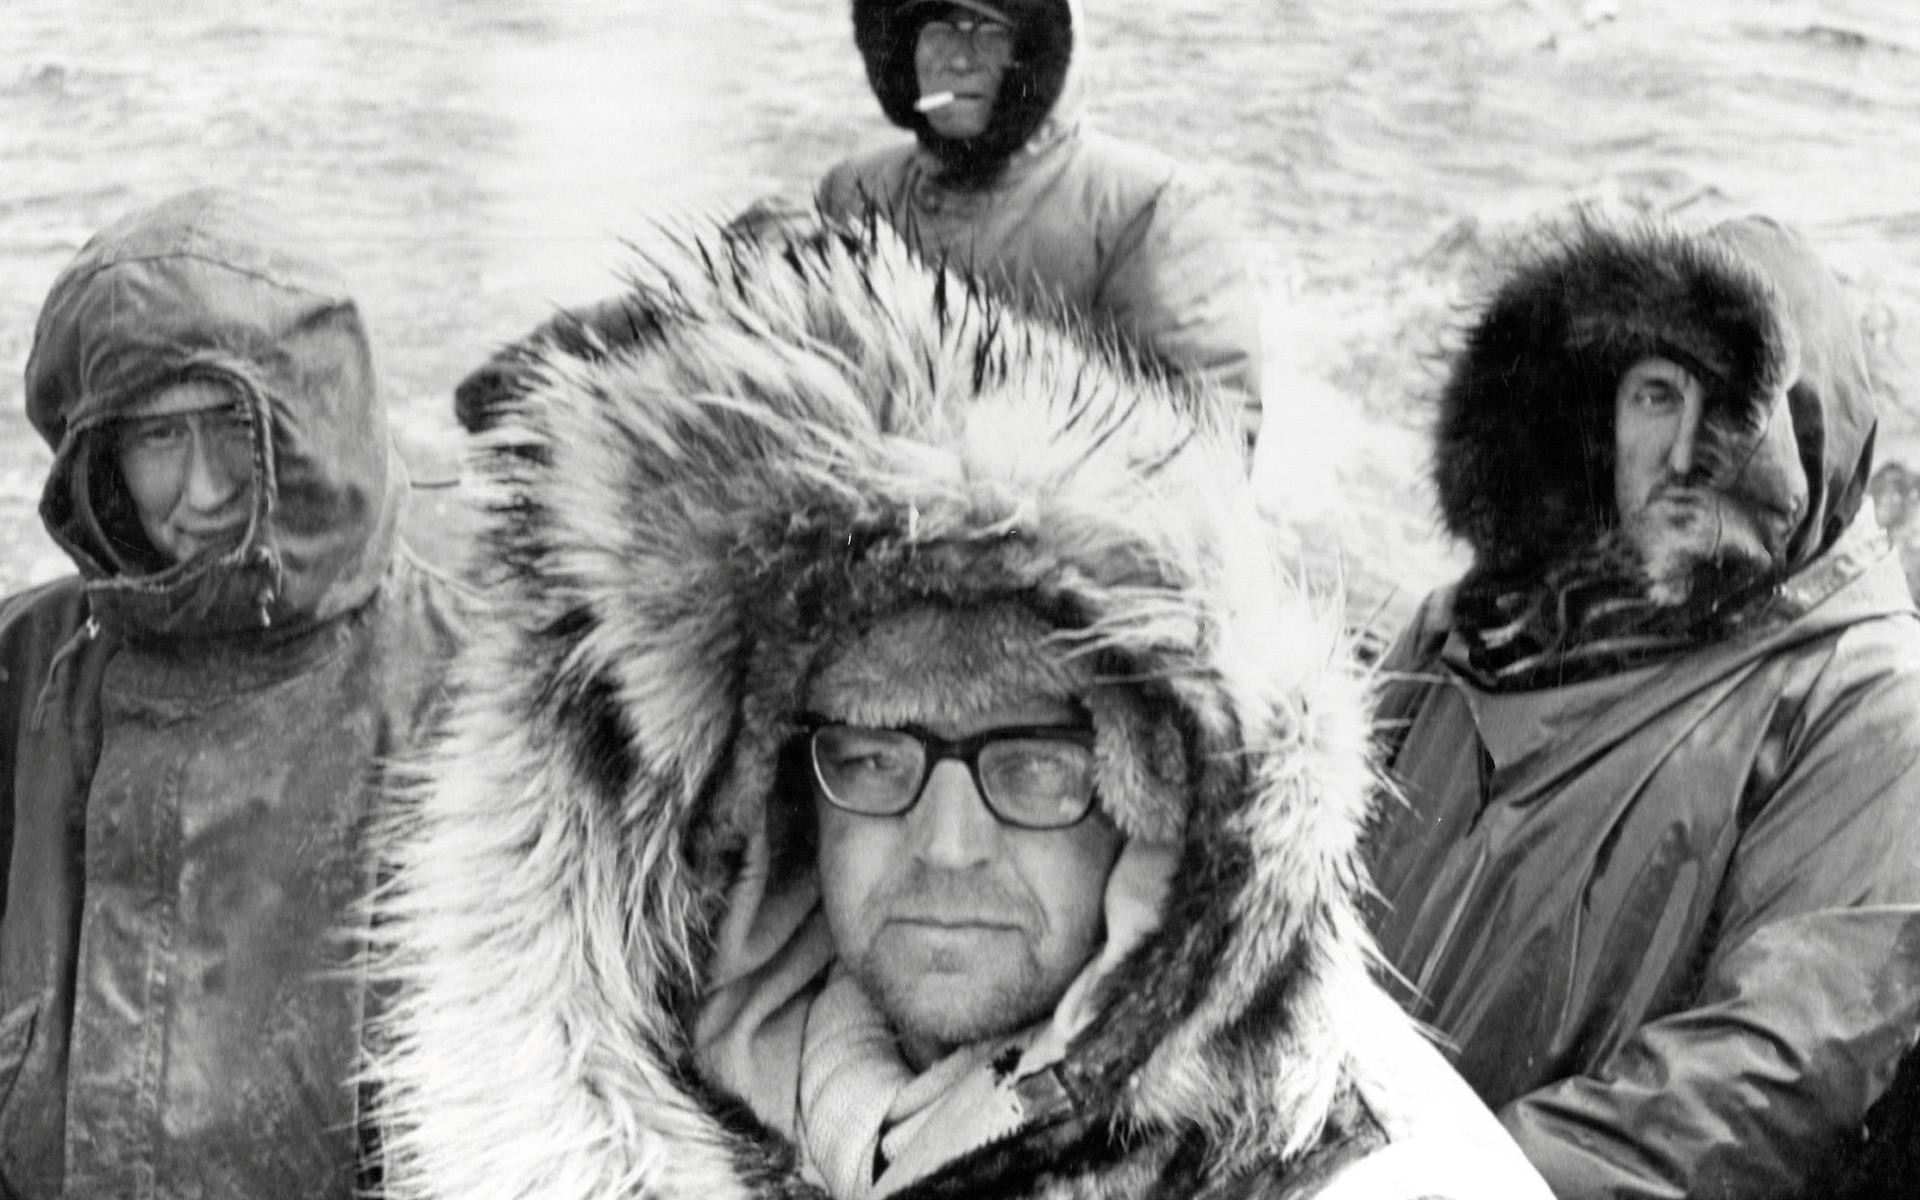 Den här bilden av Sven Gillsäter tillsammans med eskimåer och troféjägare kommer att pryda boken som utkommer senare i år med anledning av 100-årsjubileet. Bilden är tagen inför en valrossjakt i Alaska (som Sven Gillsäter dokumenterade med avsky.)